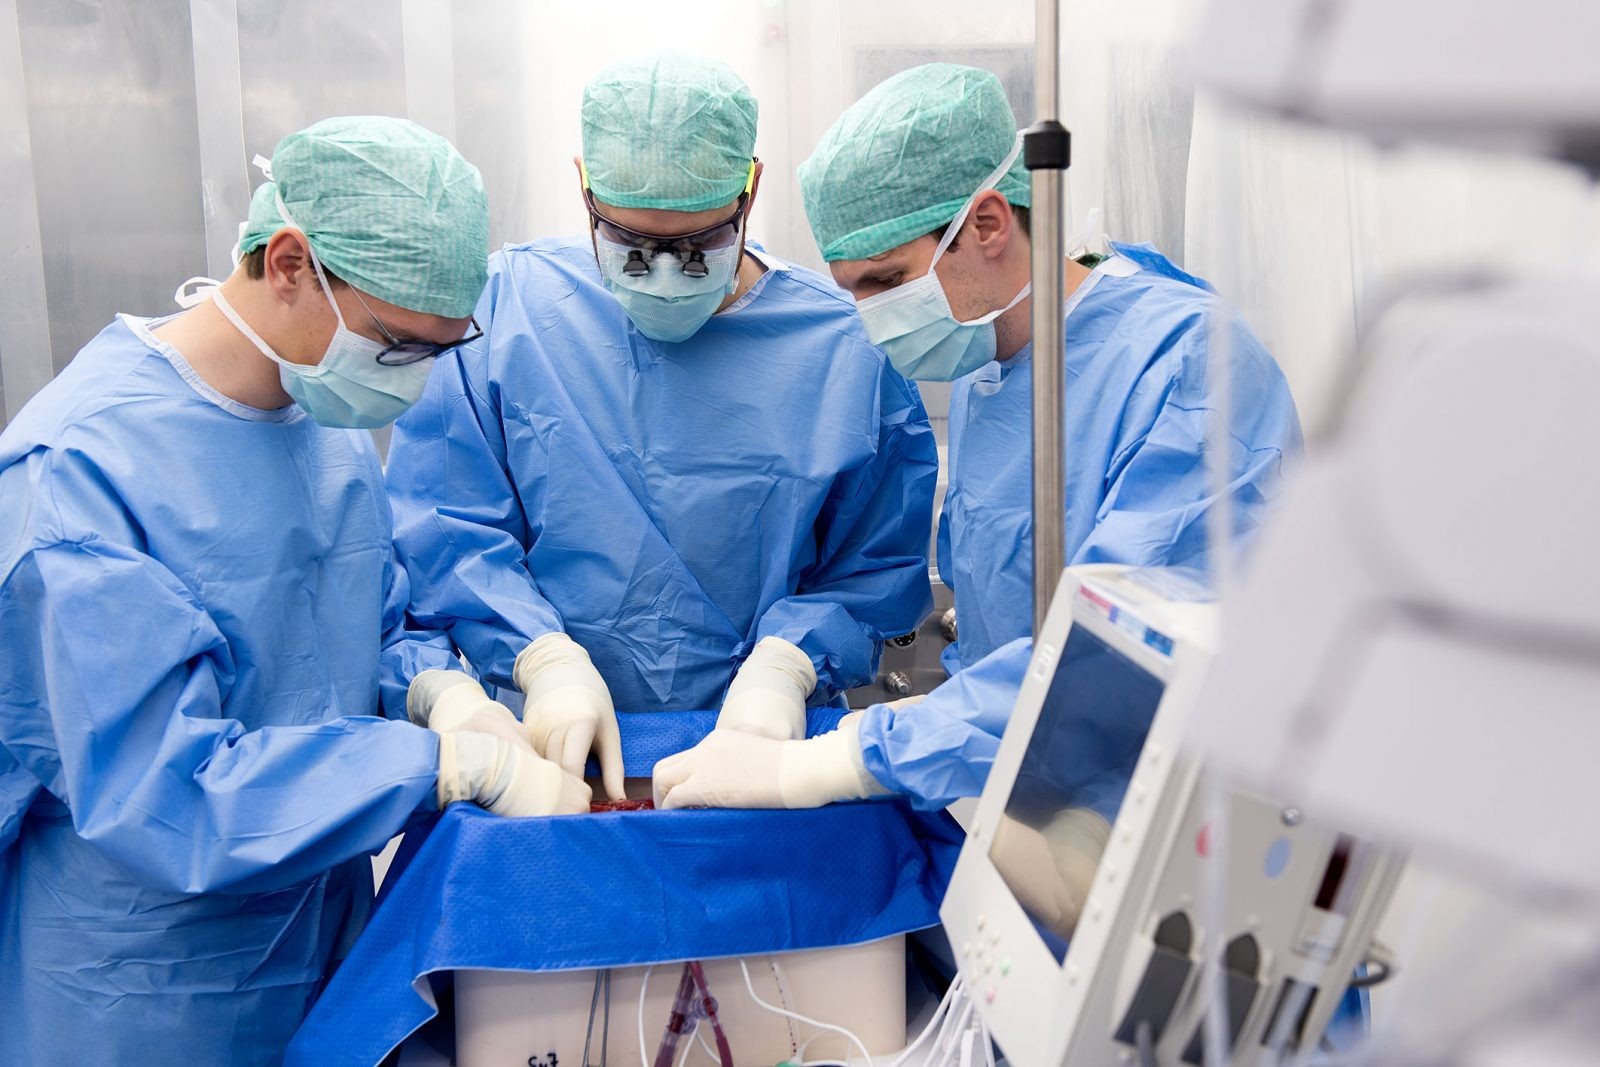 Chirurdzy z Zurychu podczas transplantacji /Fot. UZH
